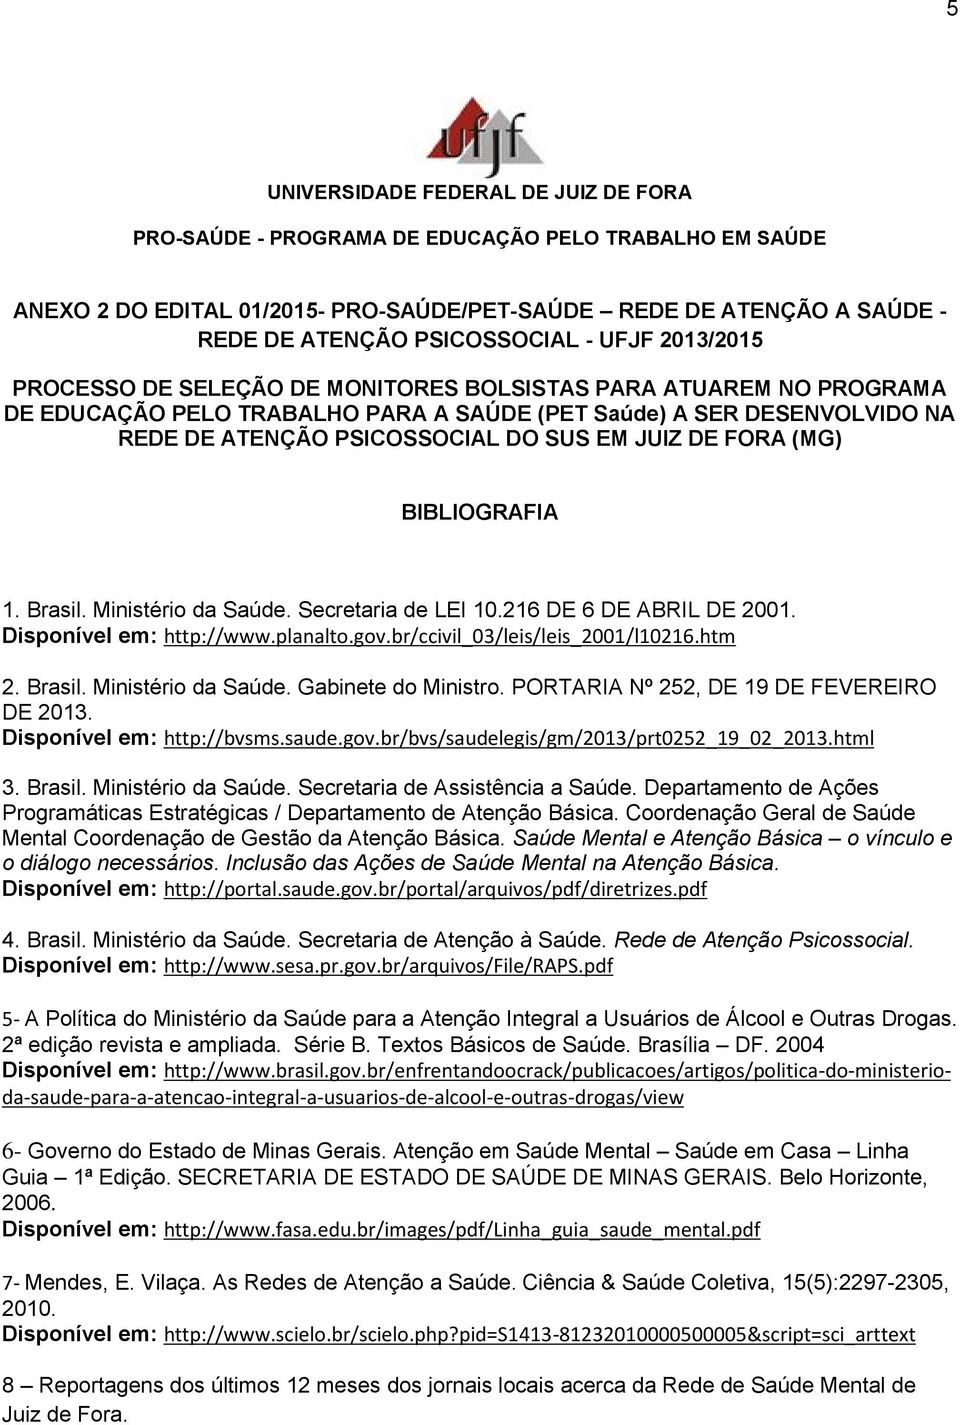 216 DE 6 DE ABRIL DE 2001. Disponível em: http://www.planalto.gov.br/ccivil_03/leis/leis_2001/l10216.htm 2. Brasil. Ministério da Saúde. Gabinete do Ministro.